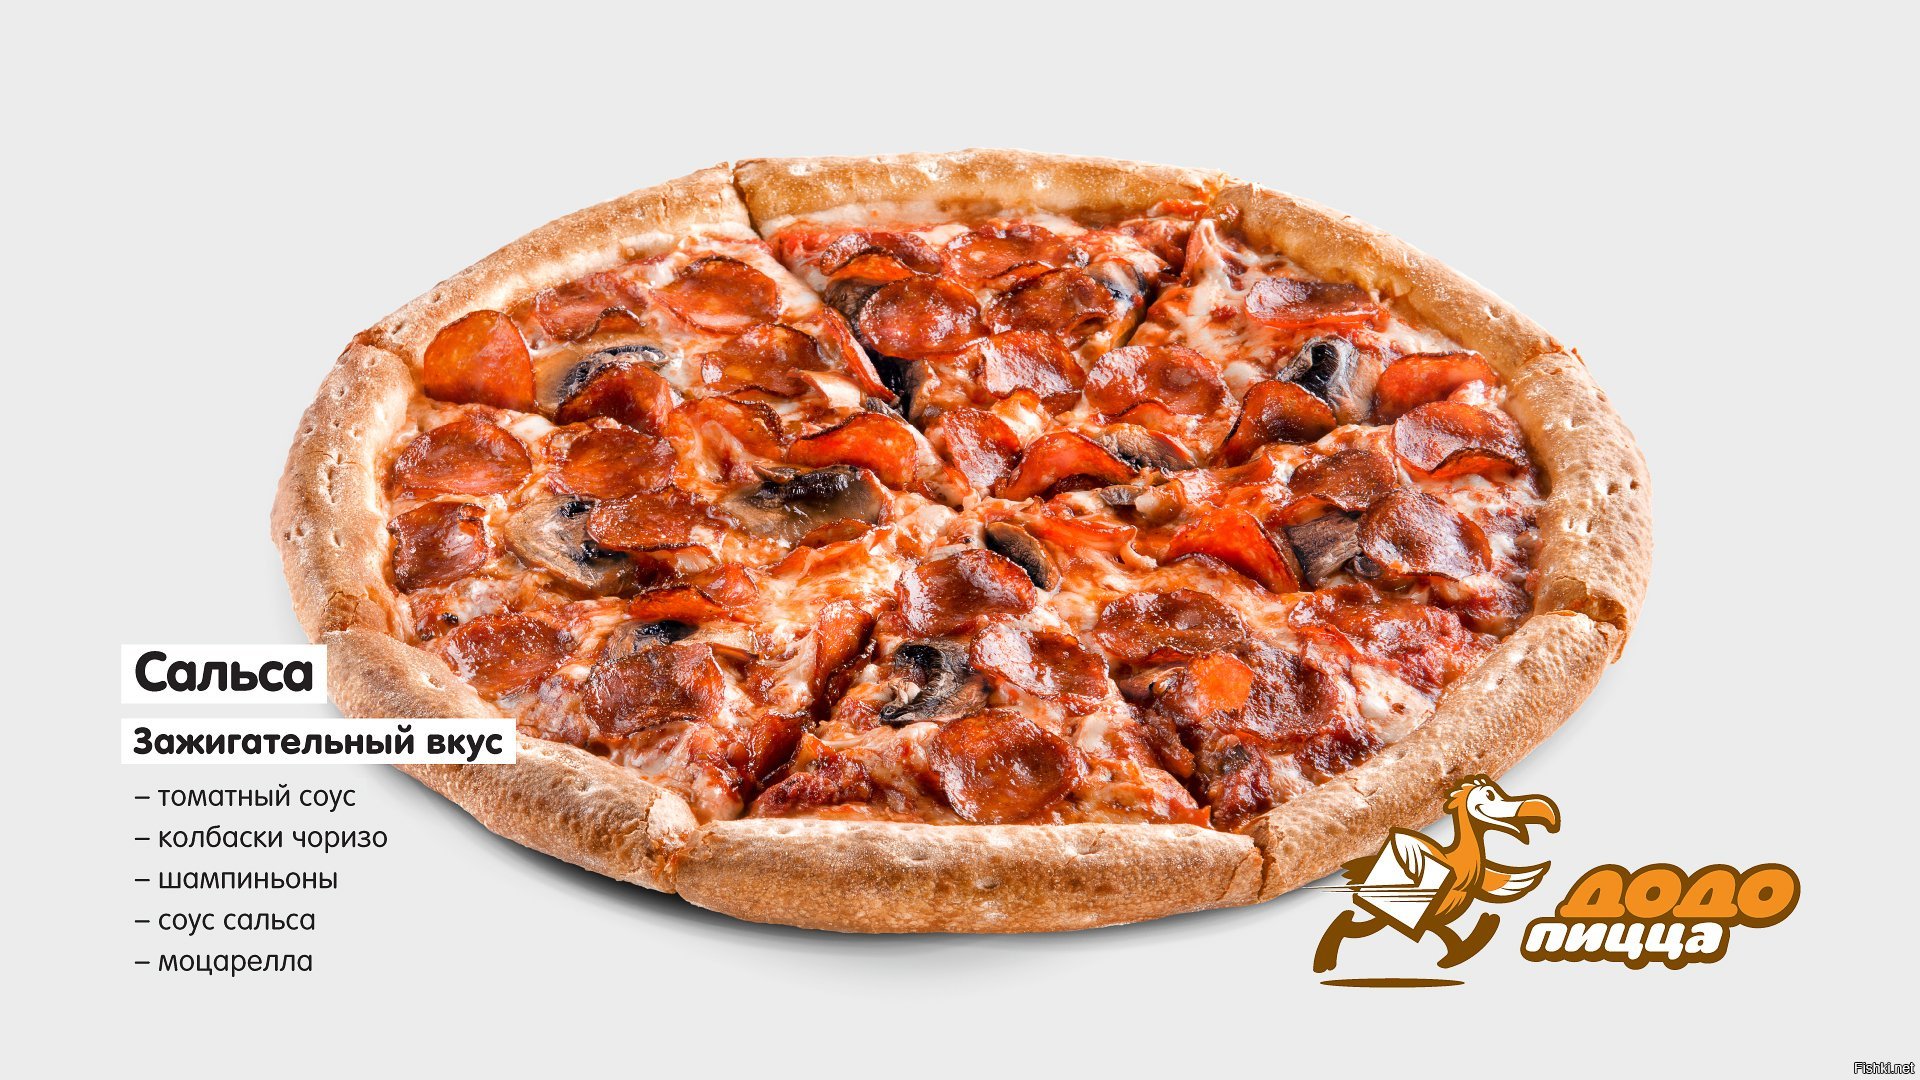 Додо никольское. Додо пицца. Додо пицца на белом фоне. Додо пицца пицца. Додо пицца моцарелла.